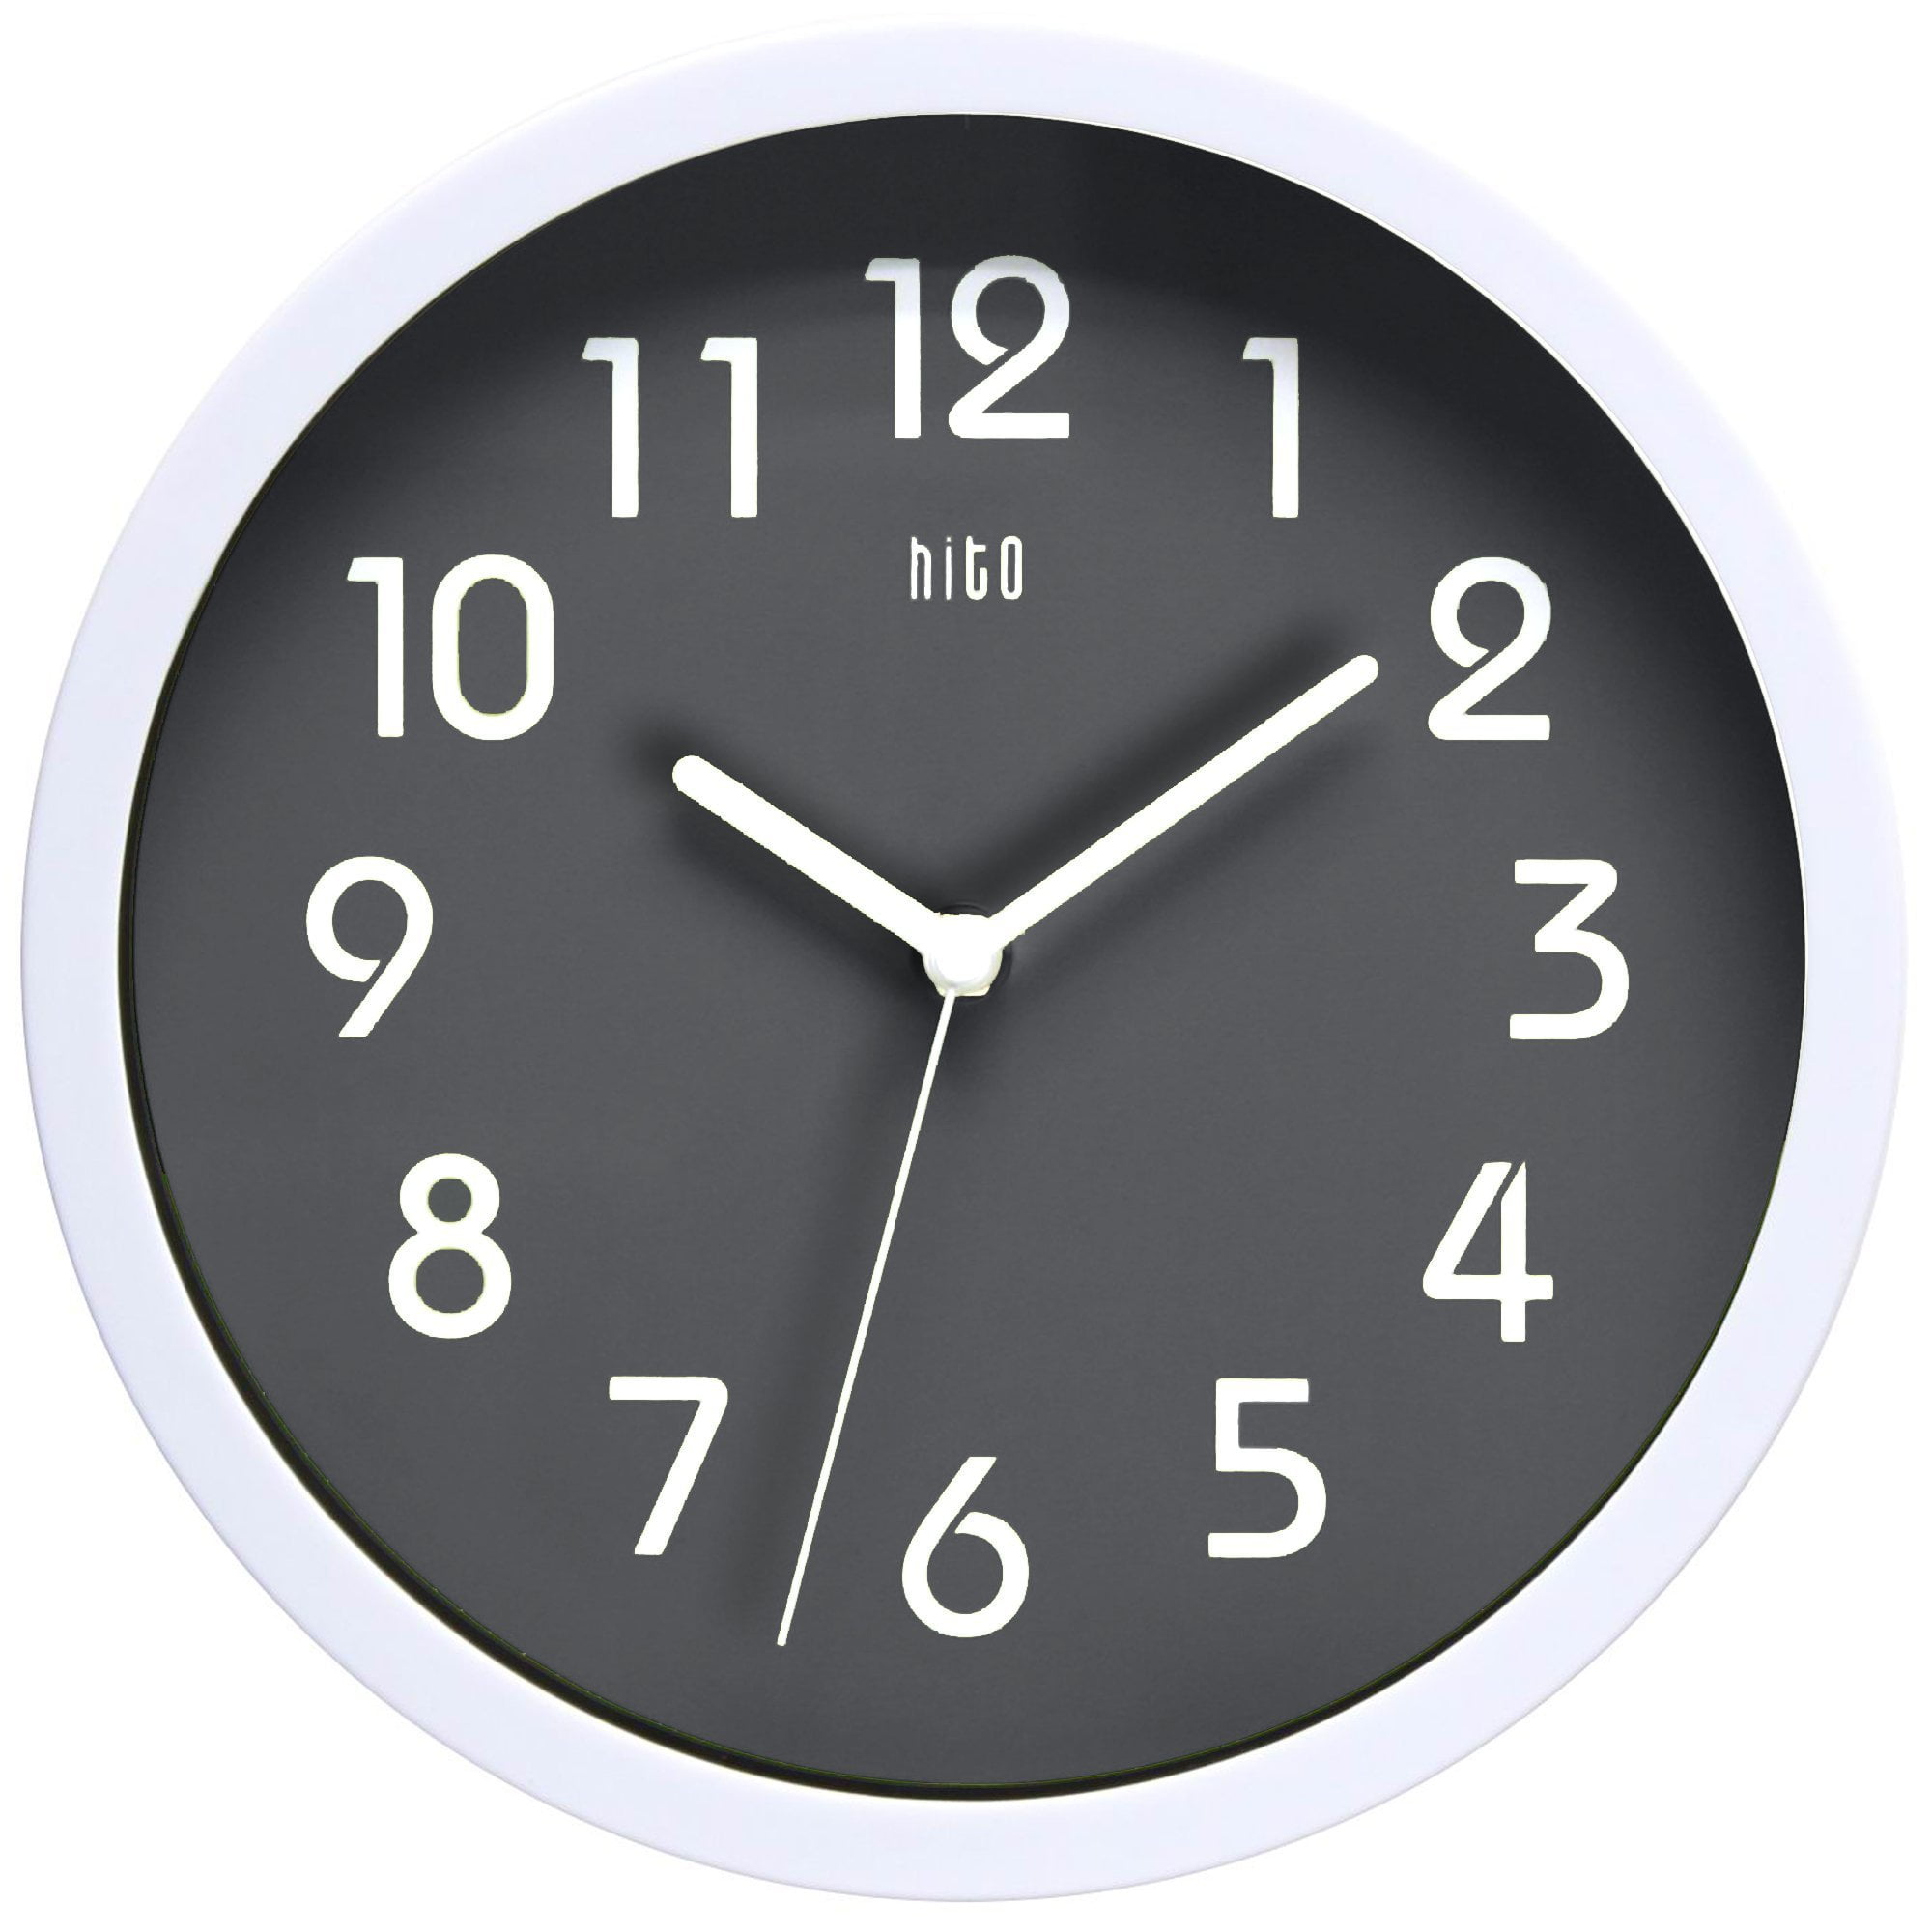 Знак часы 10 10. Часы 10 часов 10 минут. Часы десять минут. Часы 11:10. Часы 10.10 настенные.